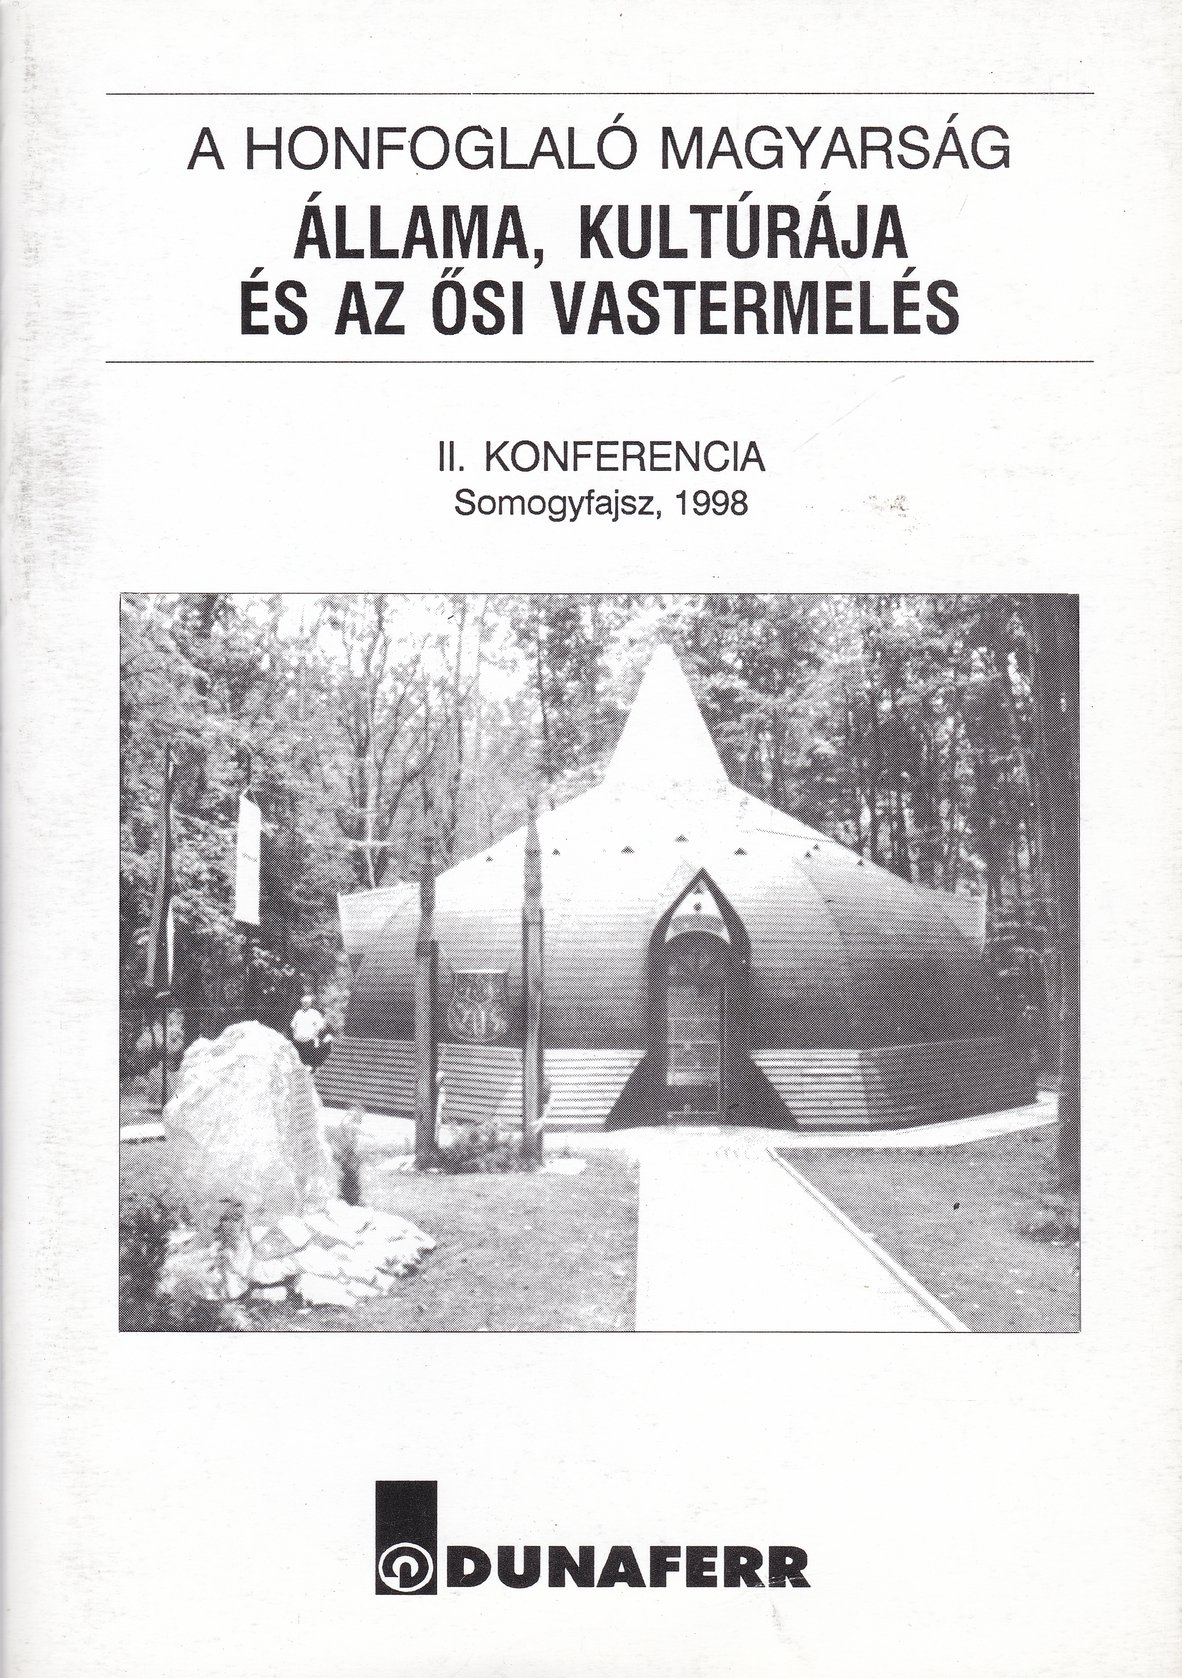 A honfoglaló magyarság állama, kultúrája és az ősi vastermelés. 2. konferencia, Somogyfajsz, 1998 (Rippl-Rónai Múzeum CC BY-NC-ND)